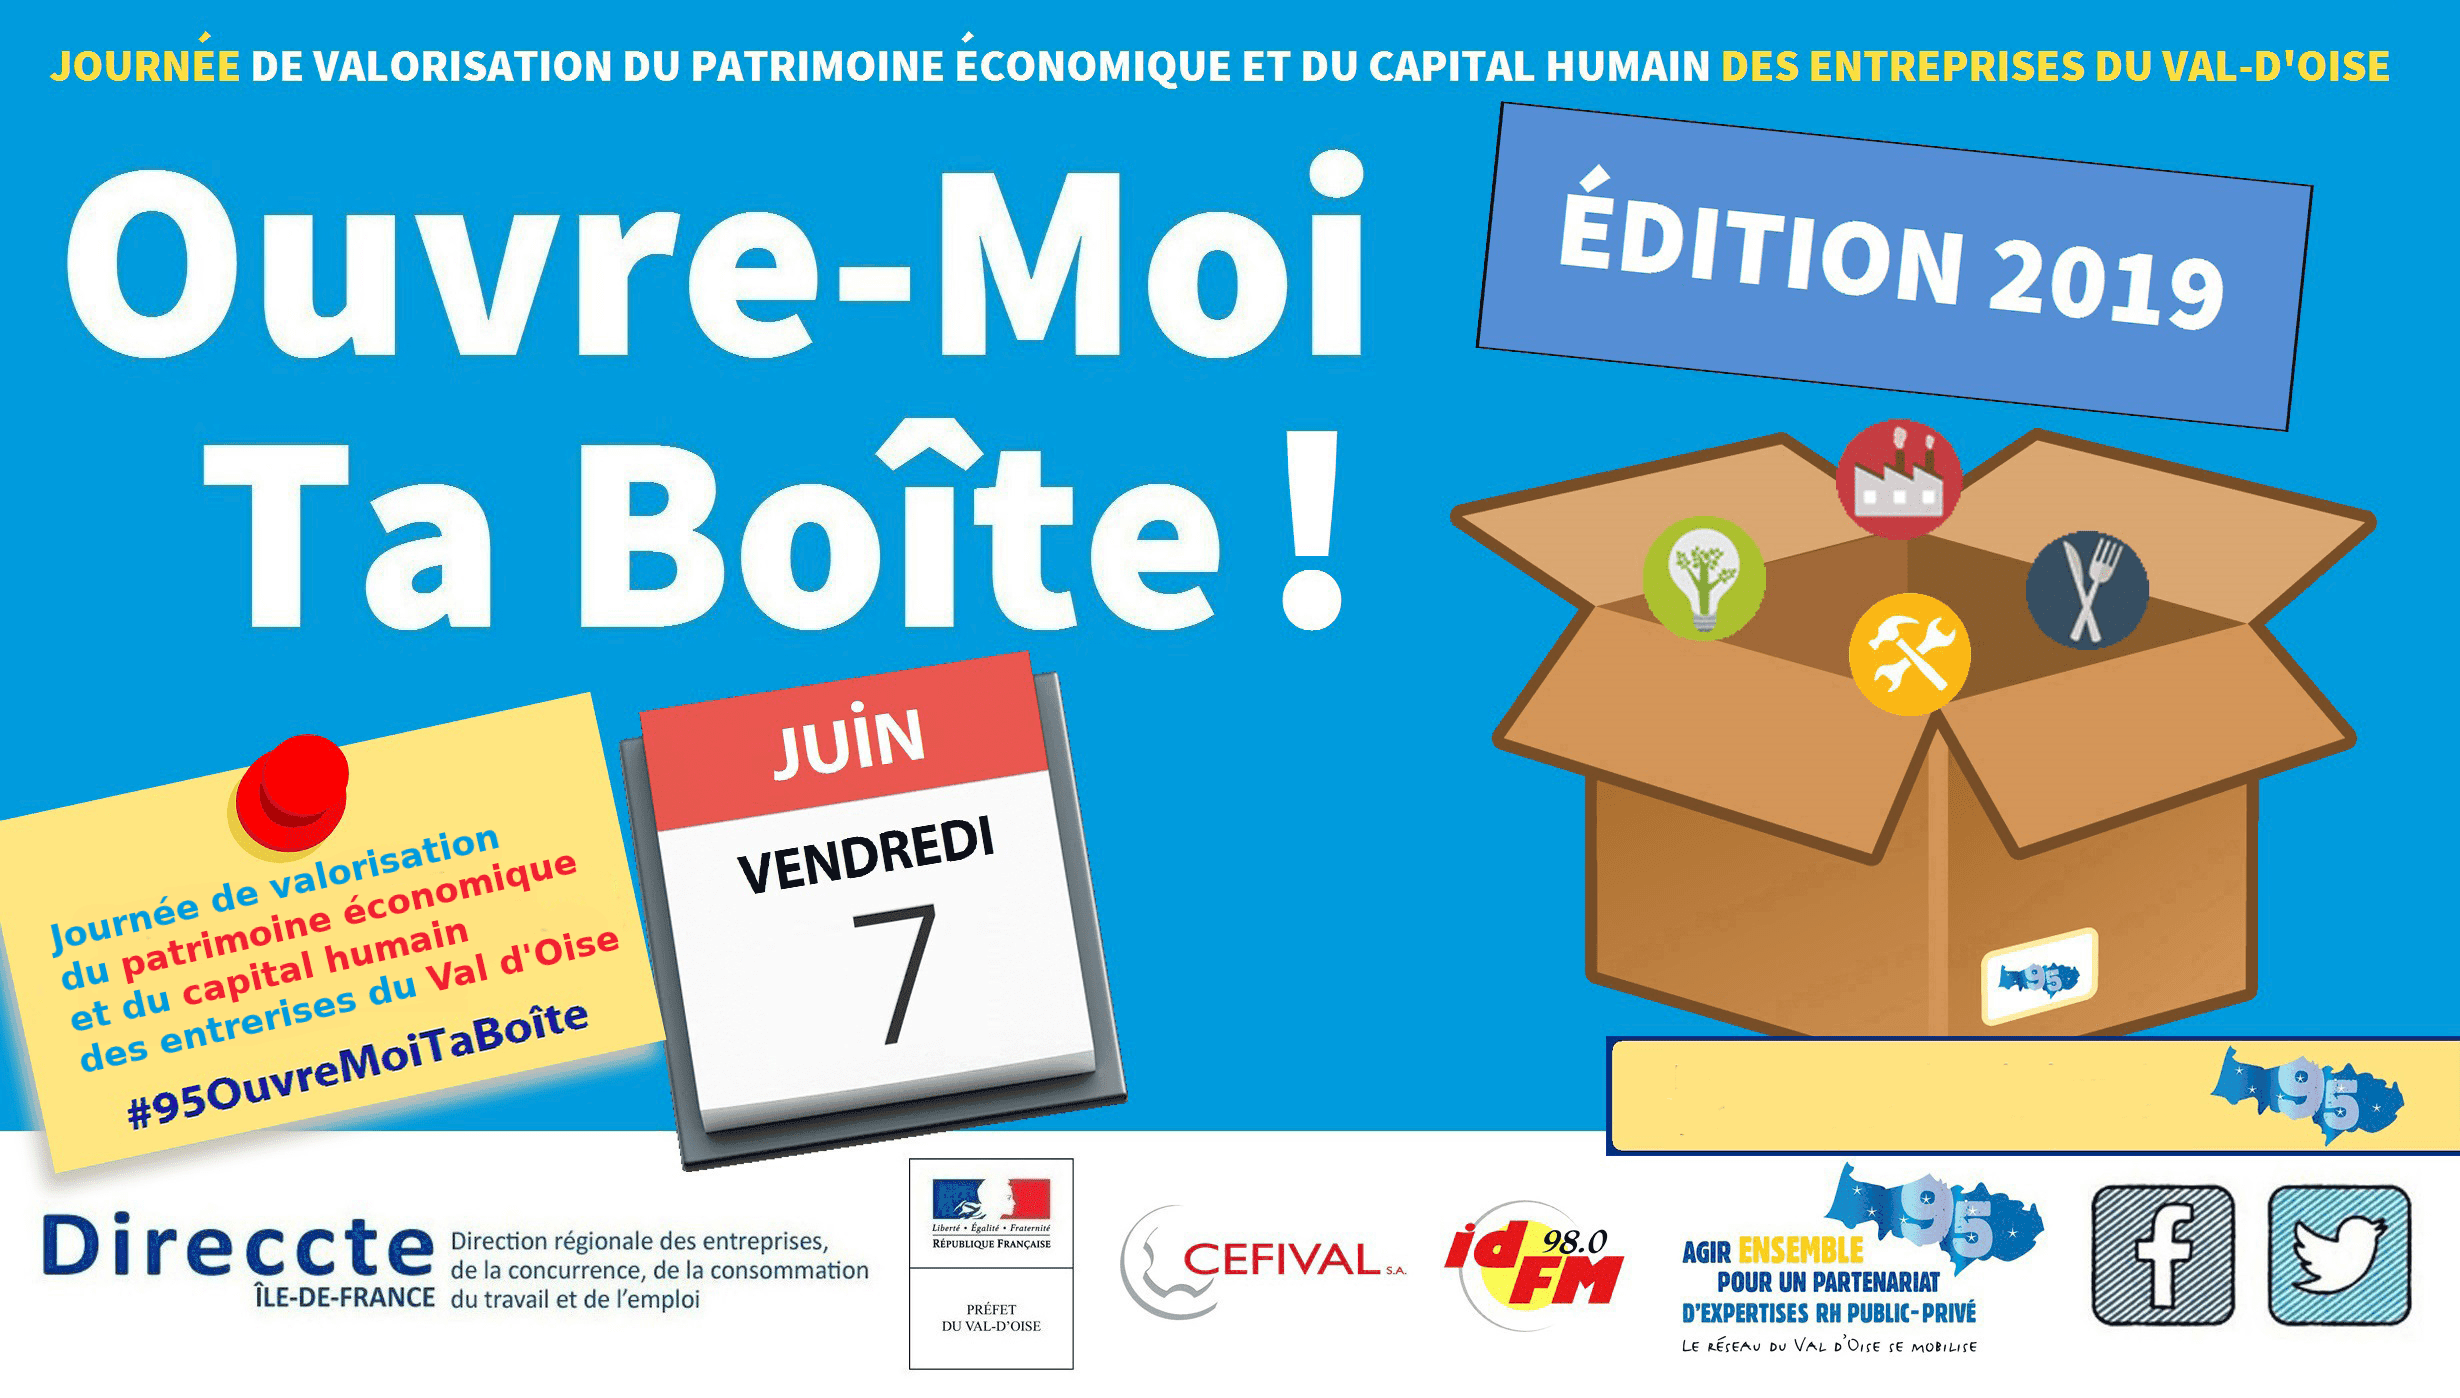 Journée de valorisation du patrimoine économique et du capital humain des entreprises du Val d'Oise. Ouvre-moi ta boîte ! Vendredi 7 juin. #95OuvreMoiTaBoite